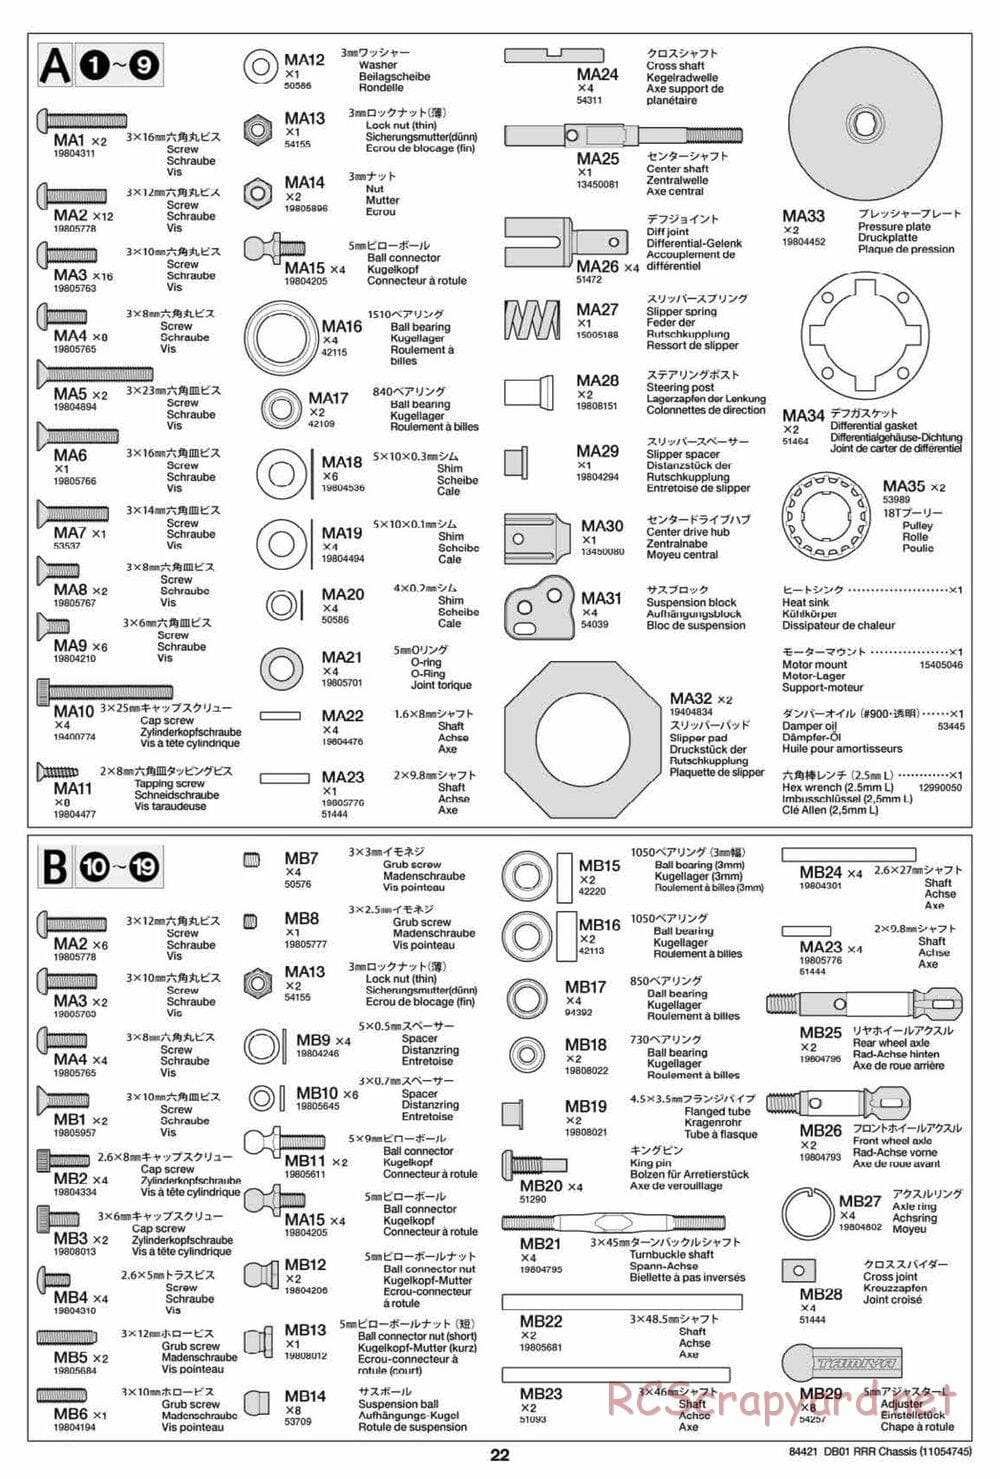 Tamiya - DB-01 RRR Chassis - Manual - Page 22